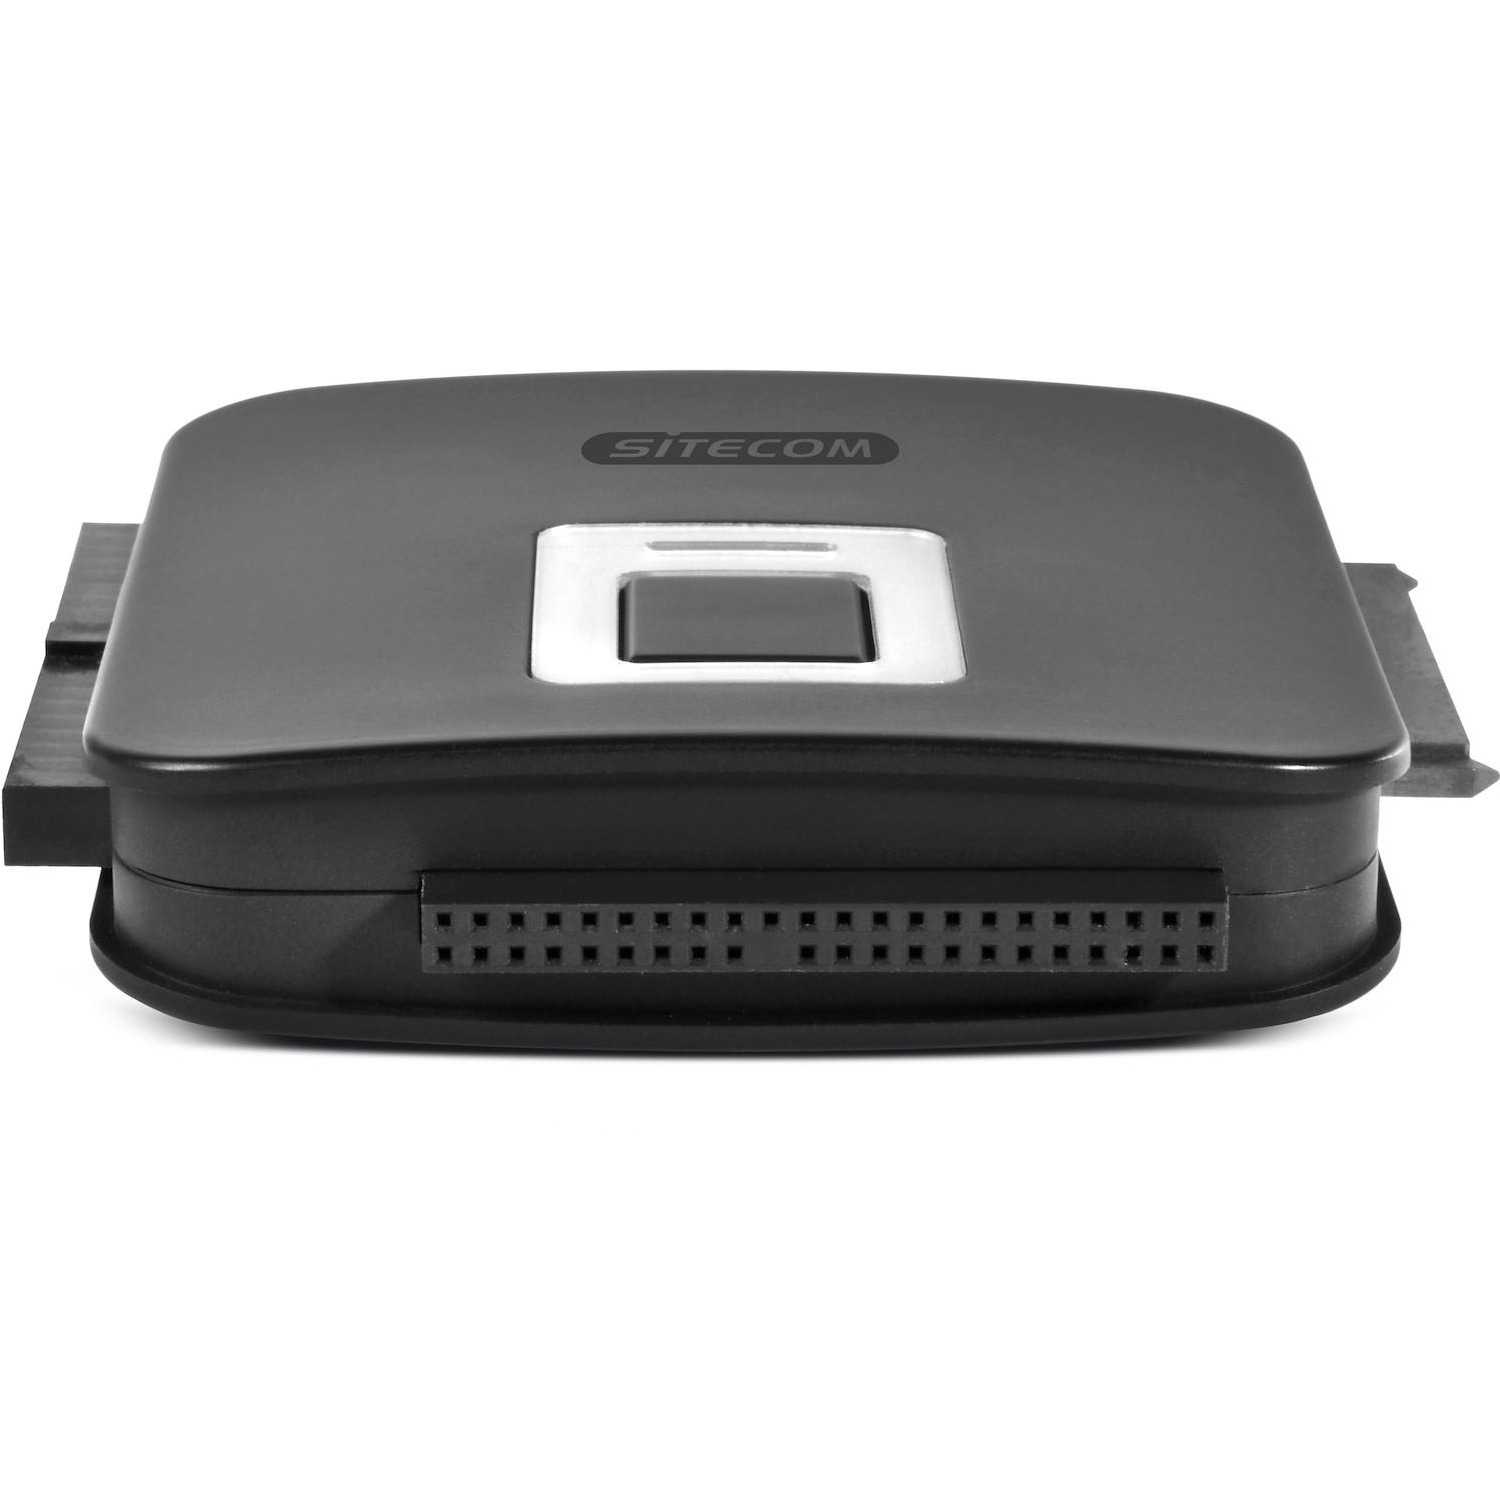 Immagine per Adattatore Sitecom USB 3.0 a IDE&SATA 2in1        con power adapter da DIMOStore